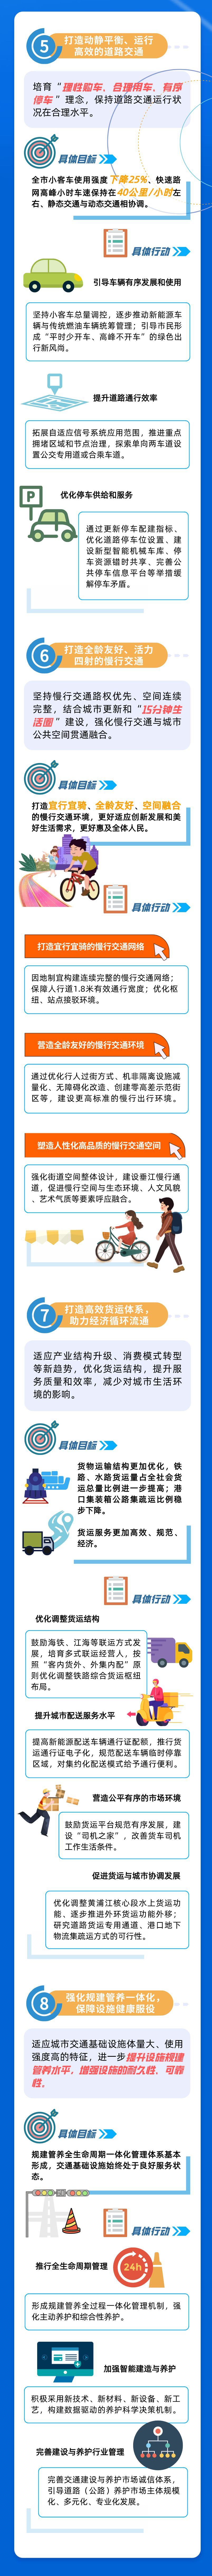 一图读懂 新一轮《上海市交通发展白皮书》5.png